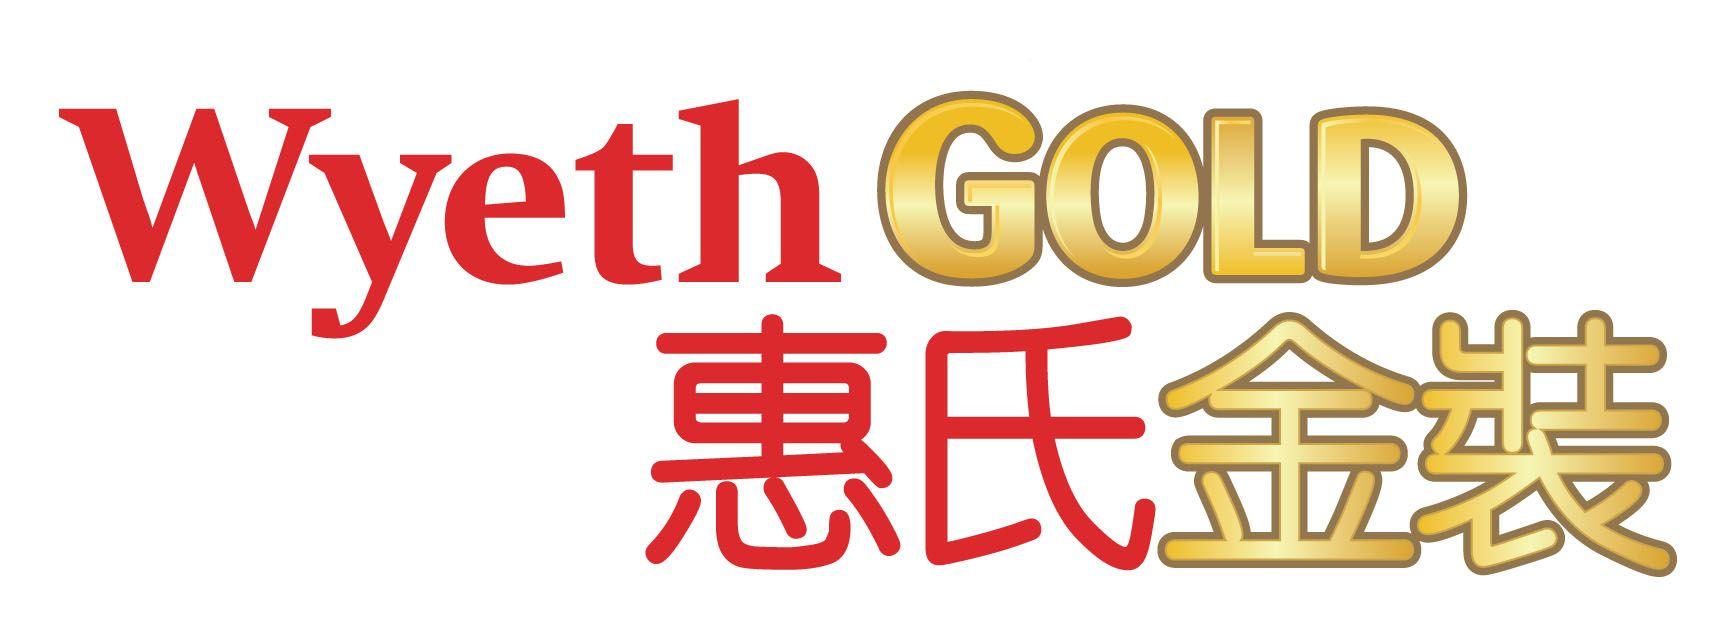 Wyeth Logo - Index Of Clients 1 1557 Wyeth Gold Logo